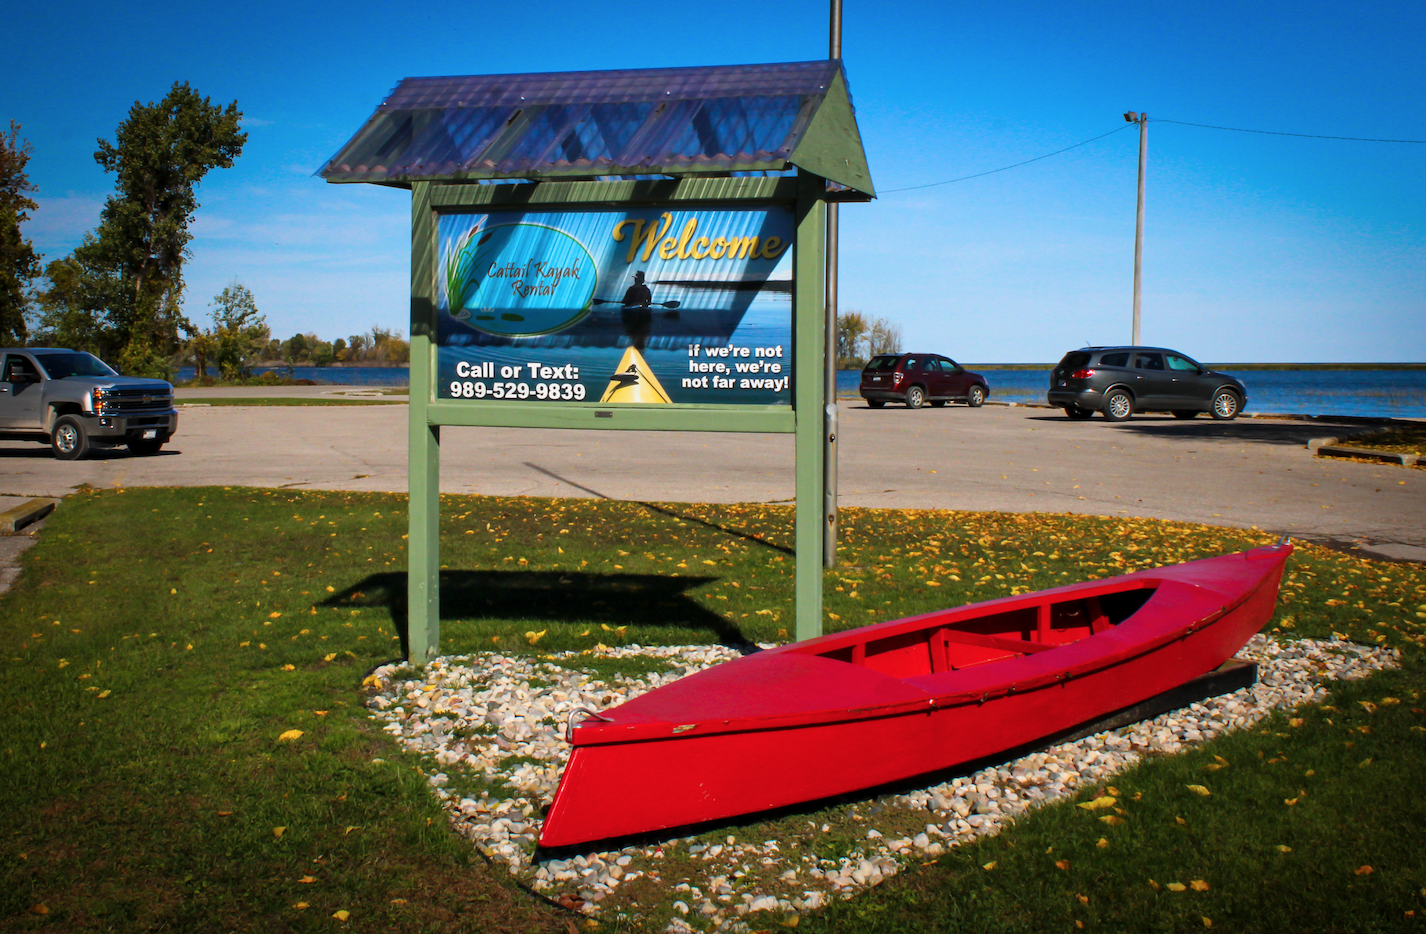 Cattail Kayak Rental